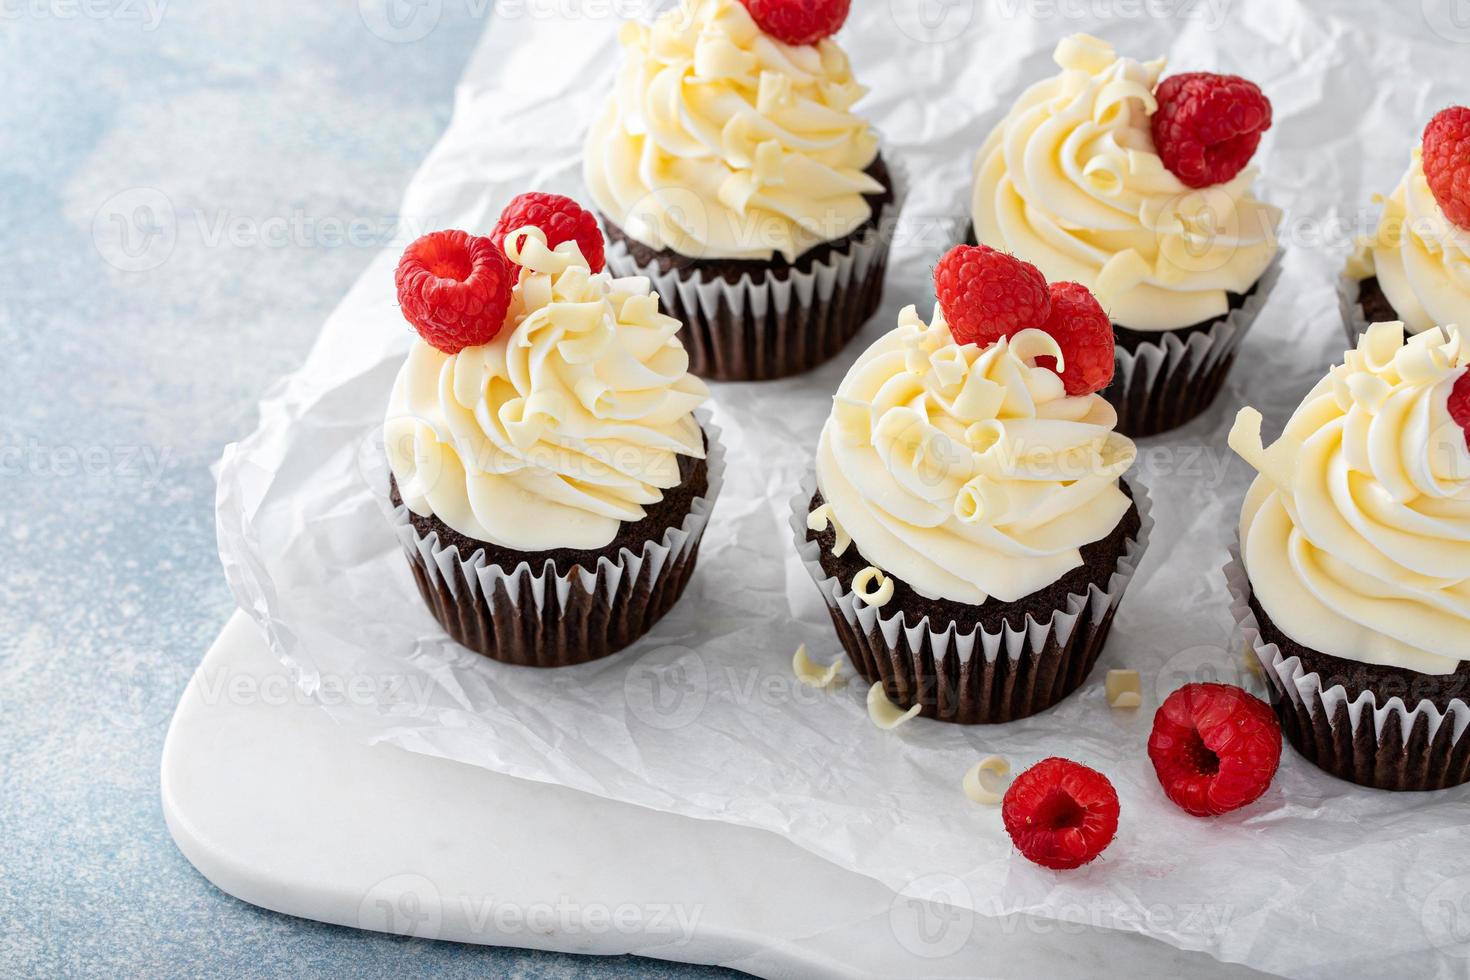 cupcakes de chocolate con glaseado de chocolate blanco y frambuesas foto